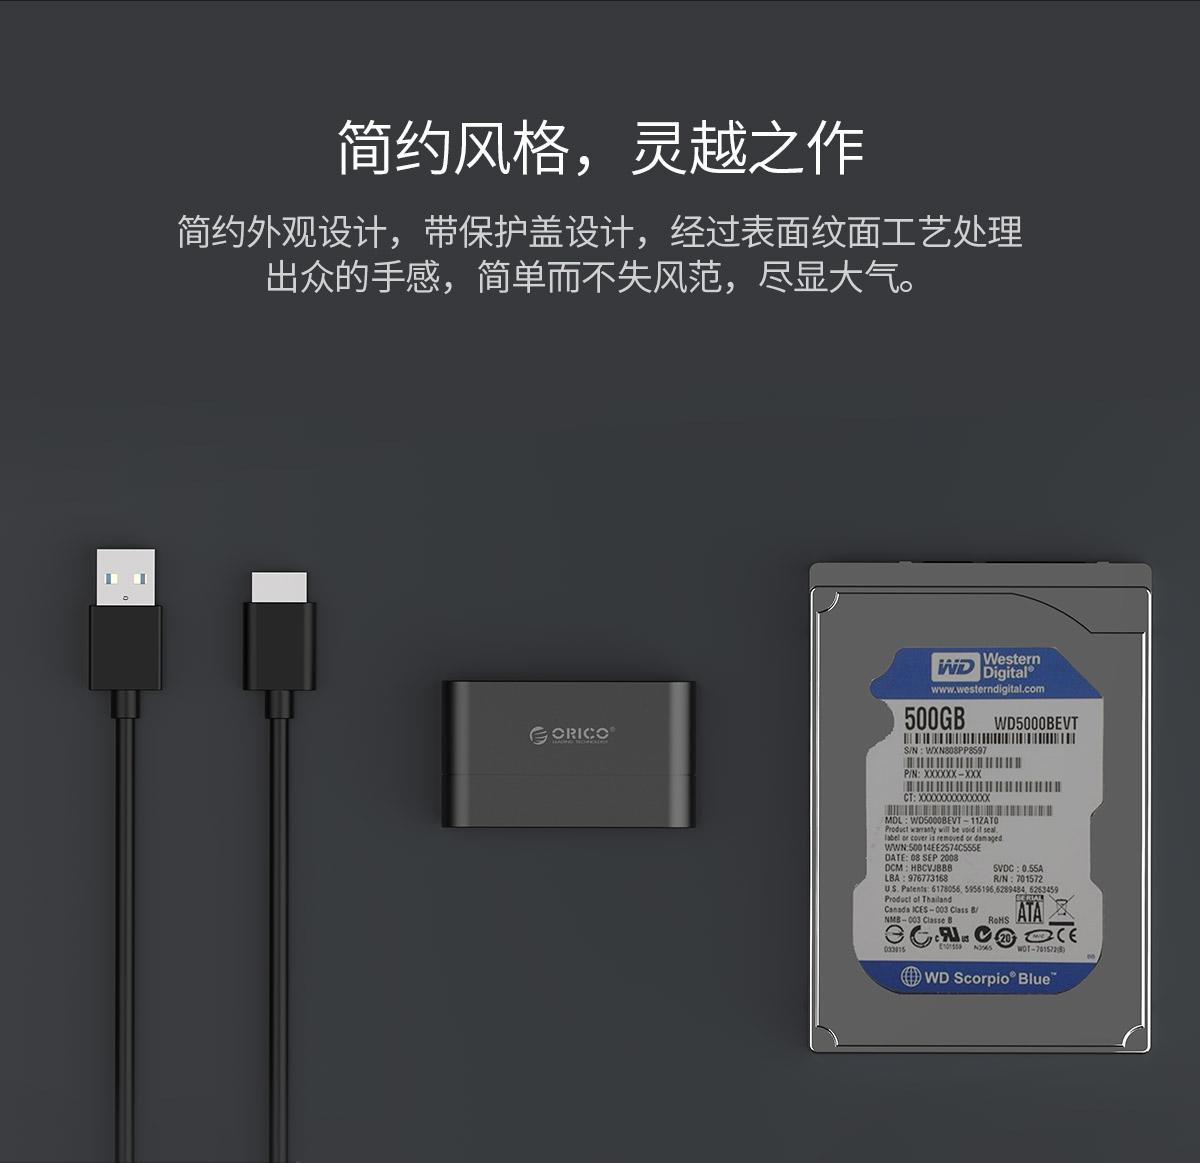 Orico USB3.0 2.5英寸硬盘易驱线，简约外观设计，表面纹面工艺处理，大气